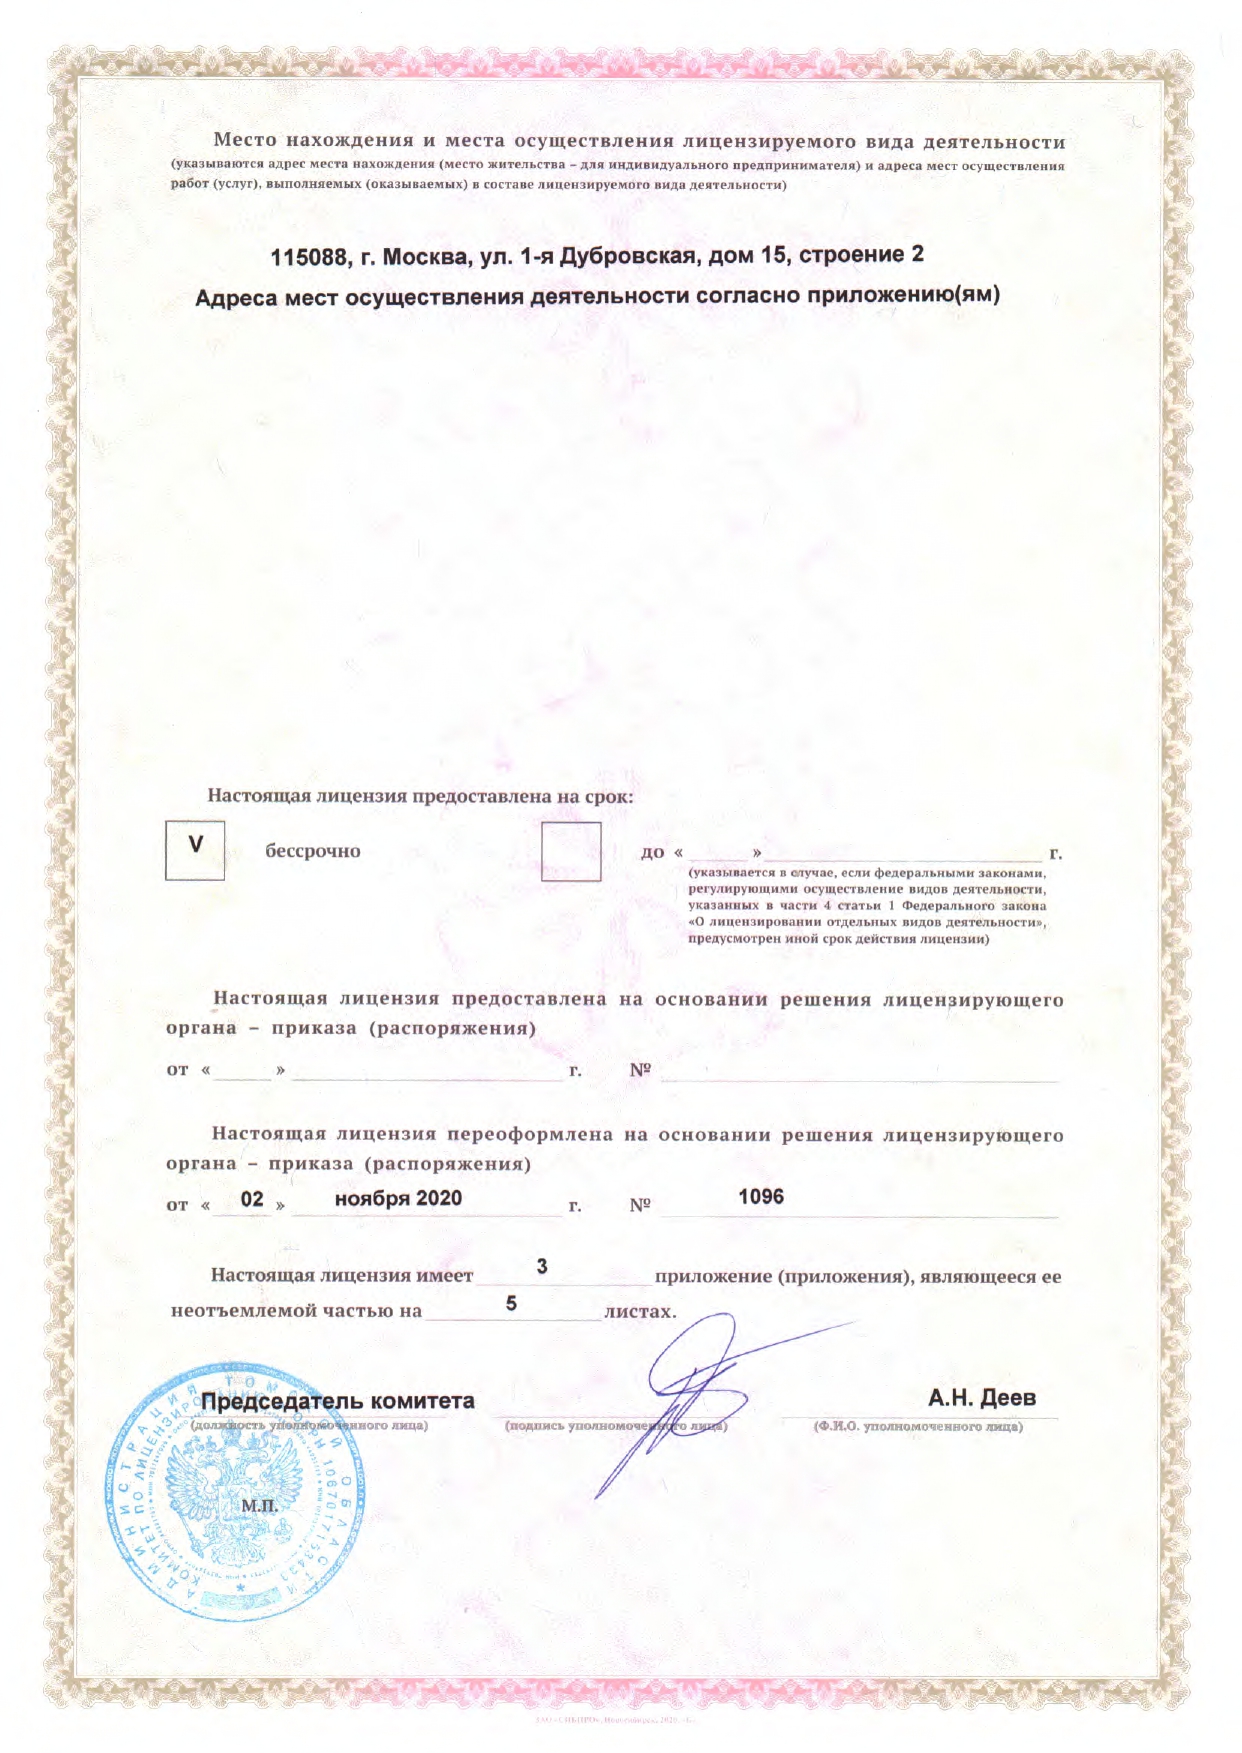 Лицензия ЛО-70-01-002775 от 02.11.2020 г. (обр. сторона)